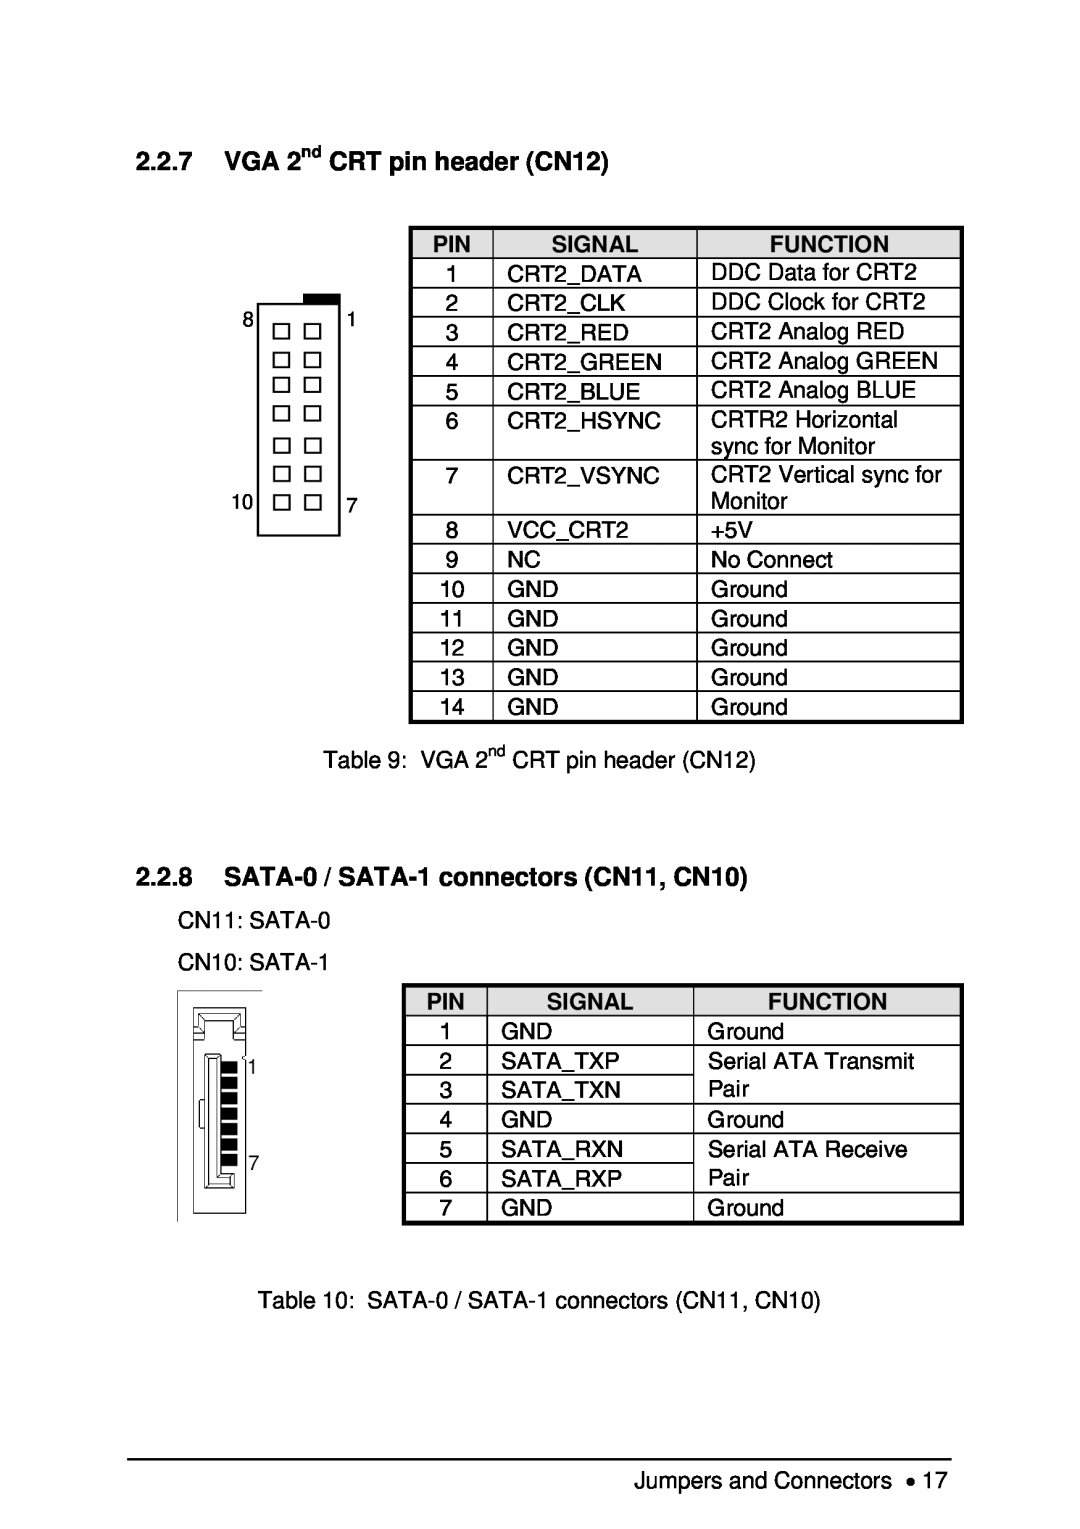 Intel NuPRO-850 user manual VGA 2nd CRT pin header CN12, SATA-0 / SATA-1 connectors CN11, CN10, Signal, Function 